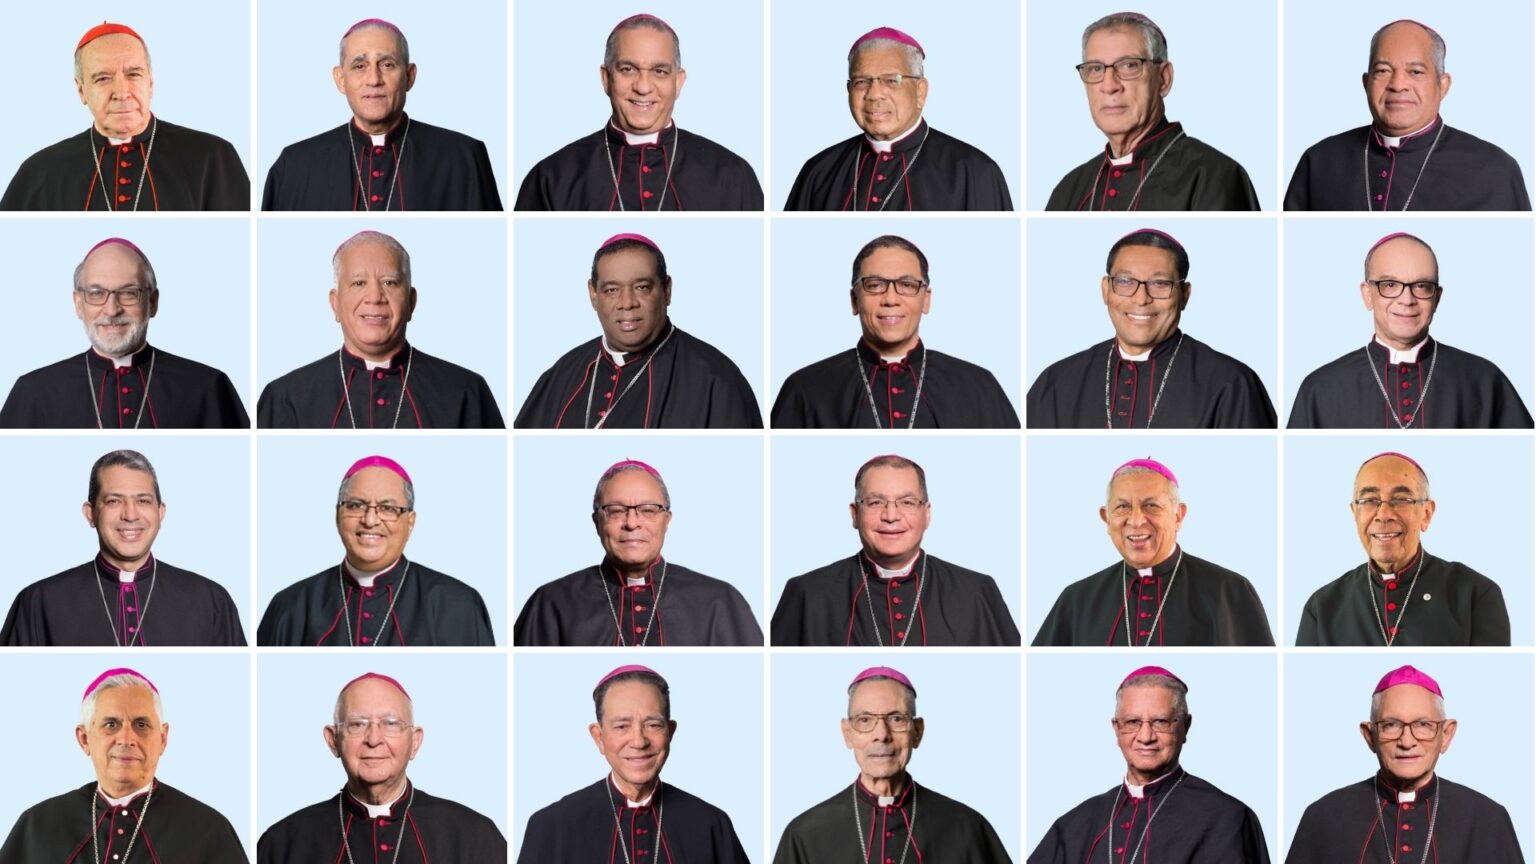 La jerarquía de la Iglesia católica tiene en promedio 70 años